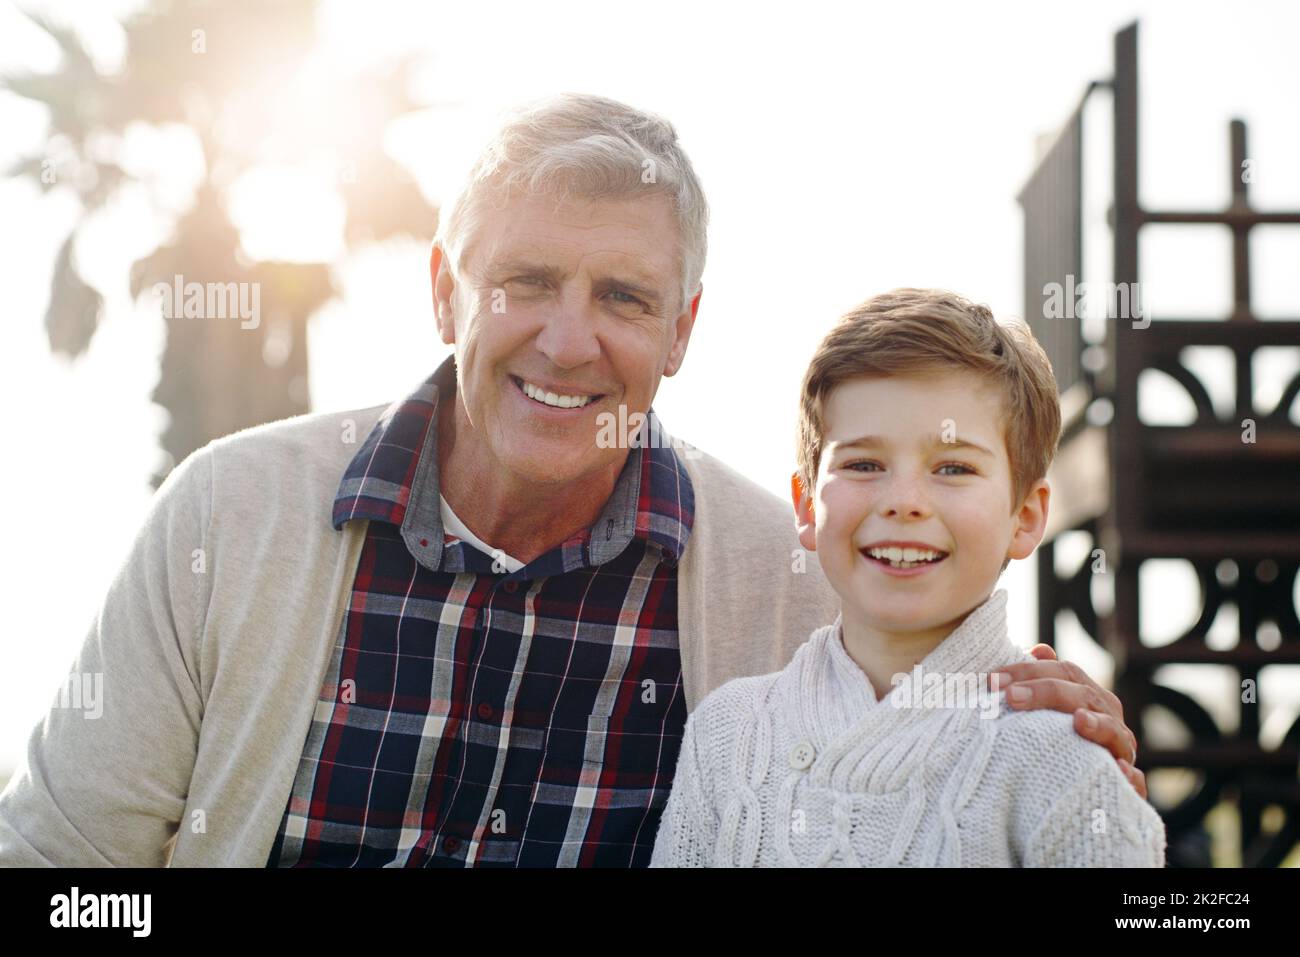 Il est sûr de dire que le système IVE a transmis les bons gènes. Portrait d'un adorable petit garçon posant avec son grand-père tout en se relaxant à l'extérieur. Banque D'Images